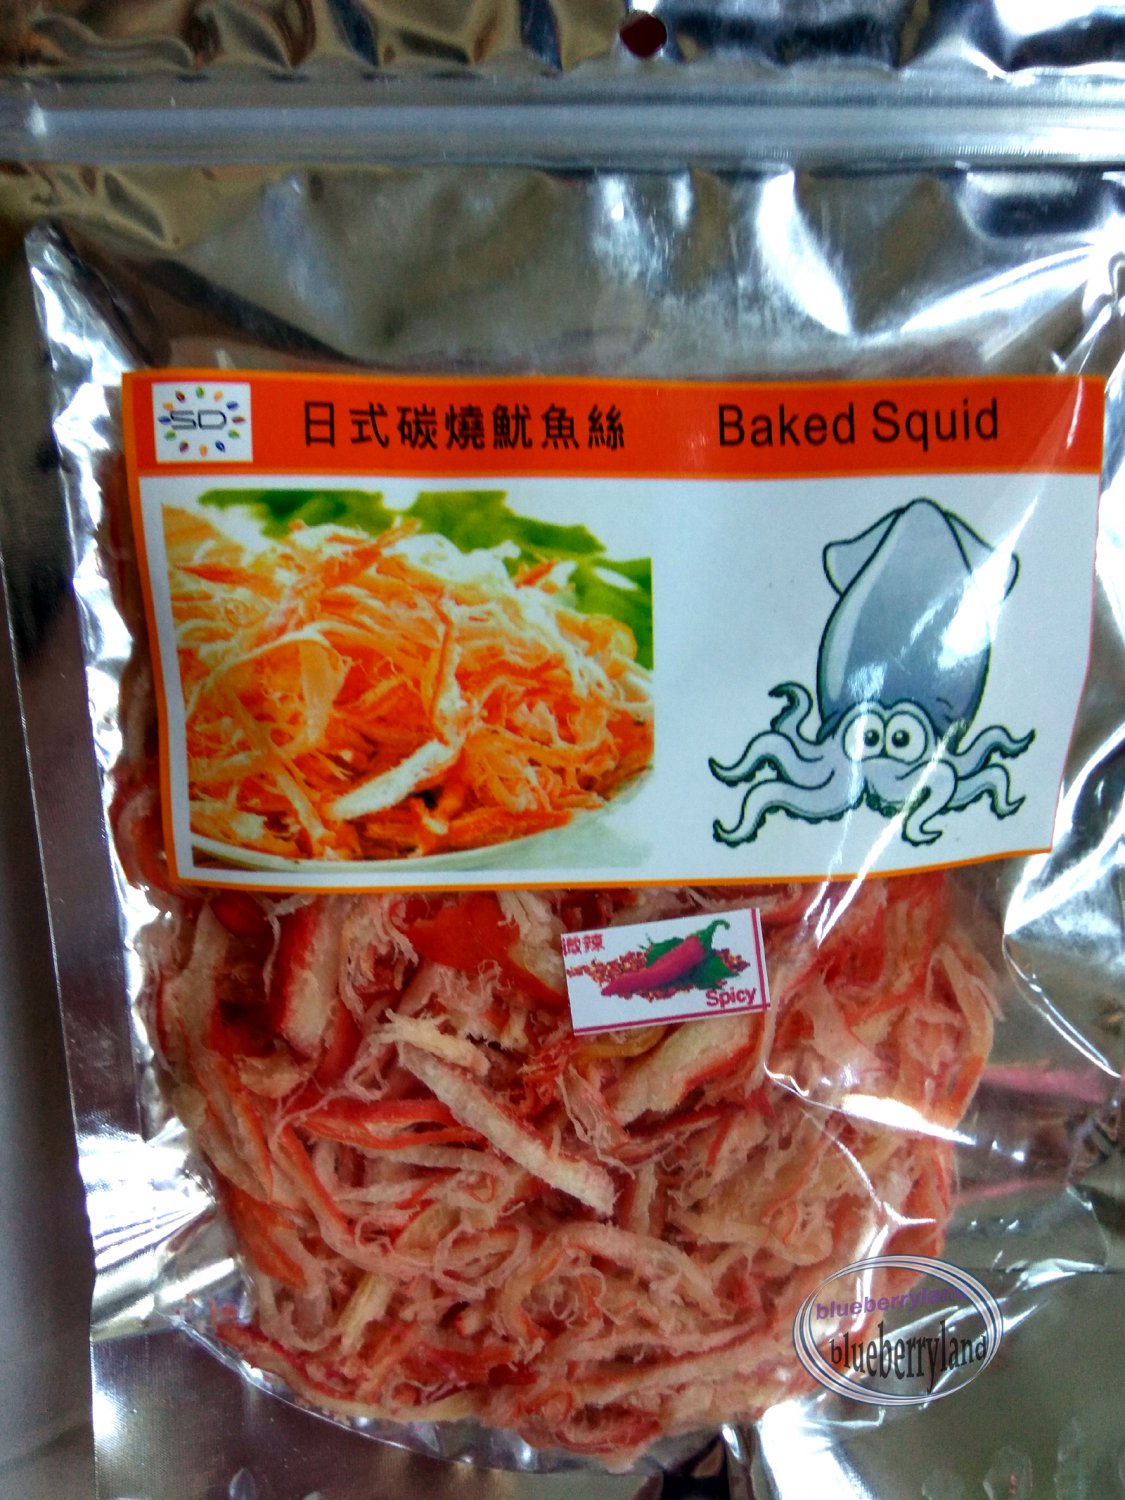 Baked Squid Spicy flavored Snack 100g kids pack party ladies food snacks